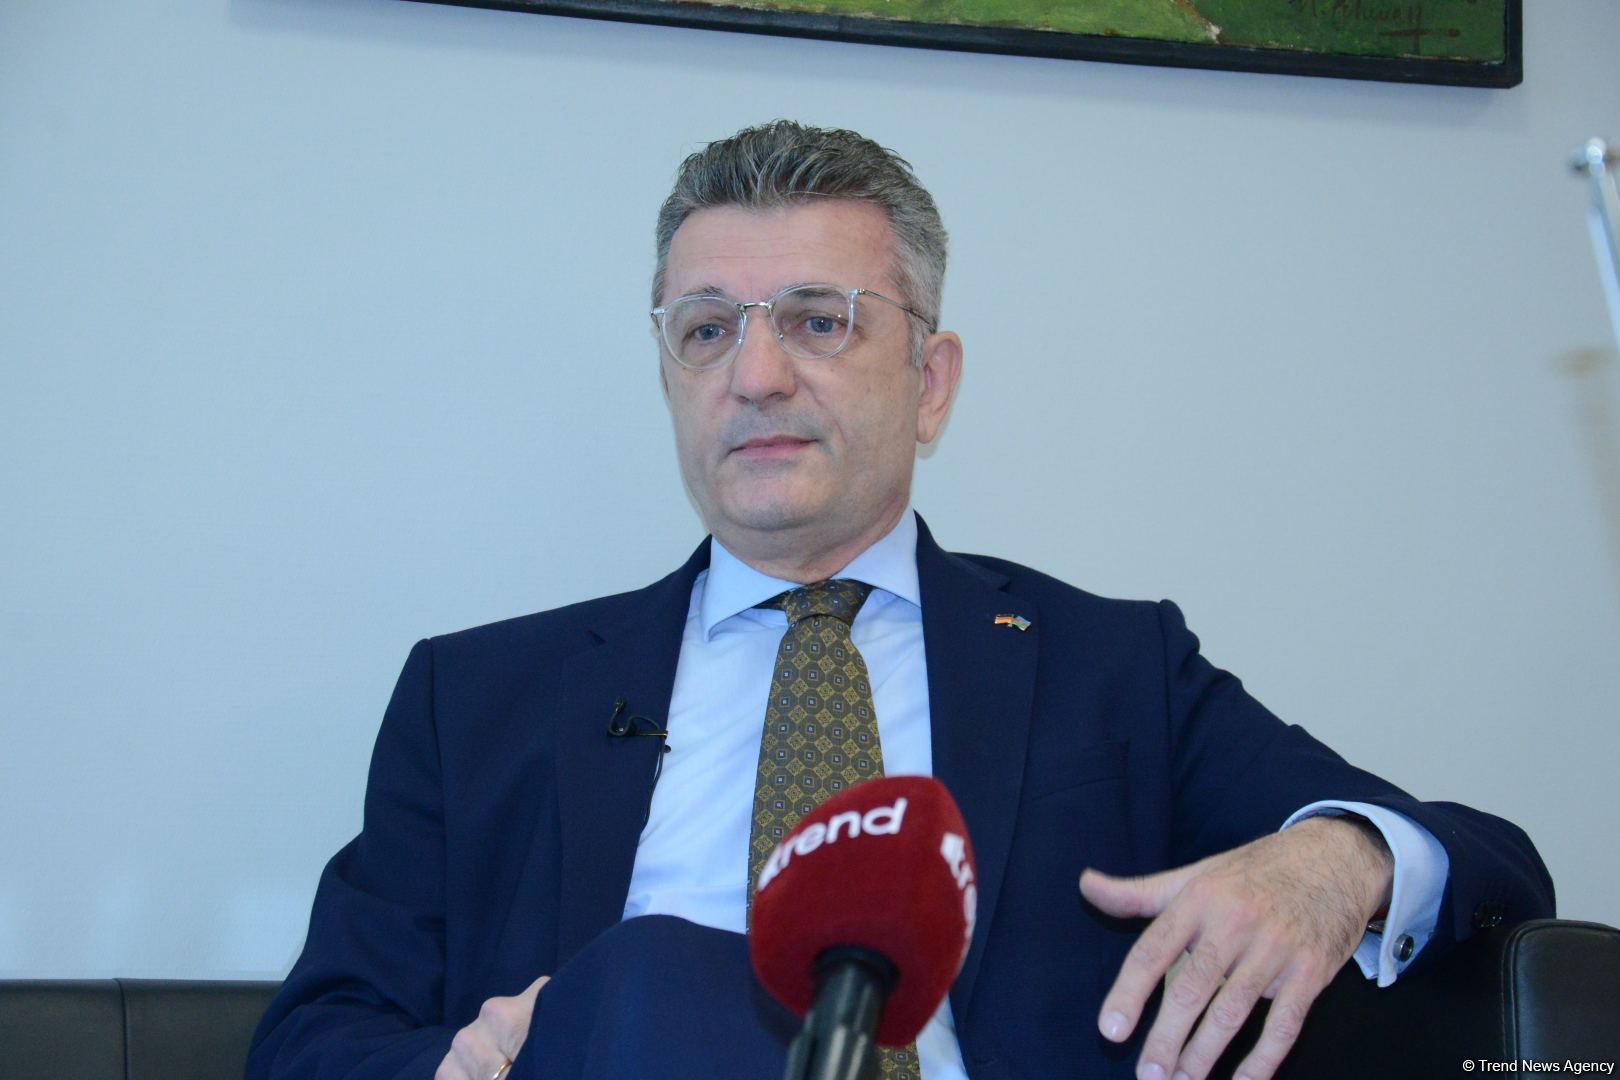 Сектор ВИЭ обладает большими перспективами в Азербайджане - посол